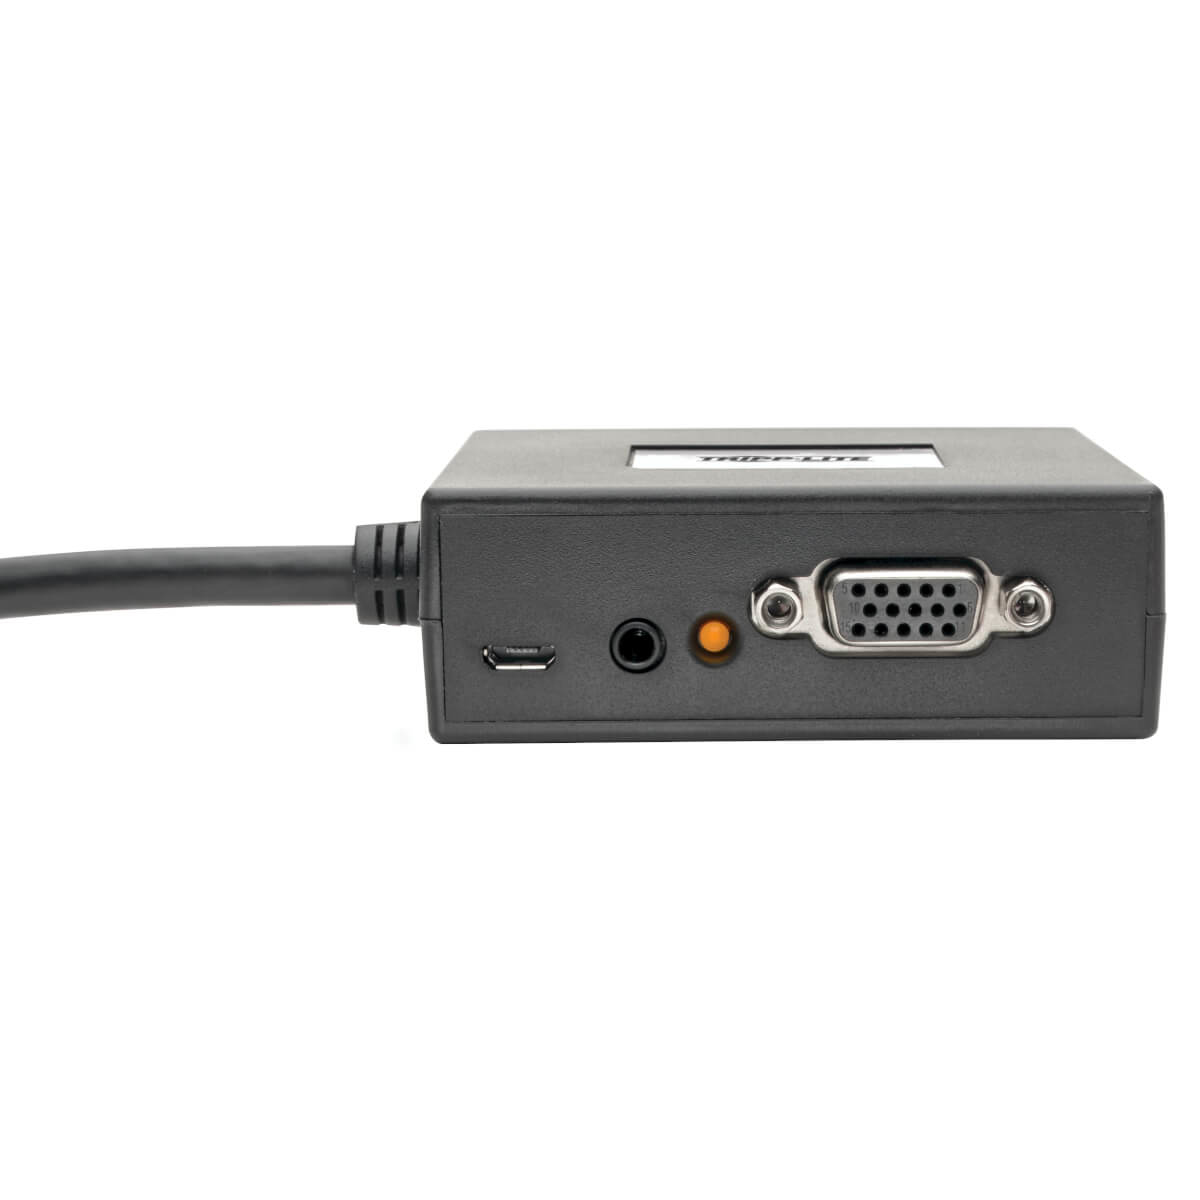 Venta de Tripp Lite Adaptador HDMI Macho - DisplayPort/USB A P130-06N-DP-V2